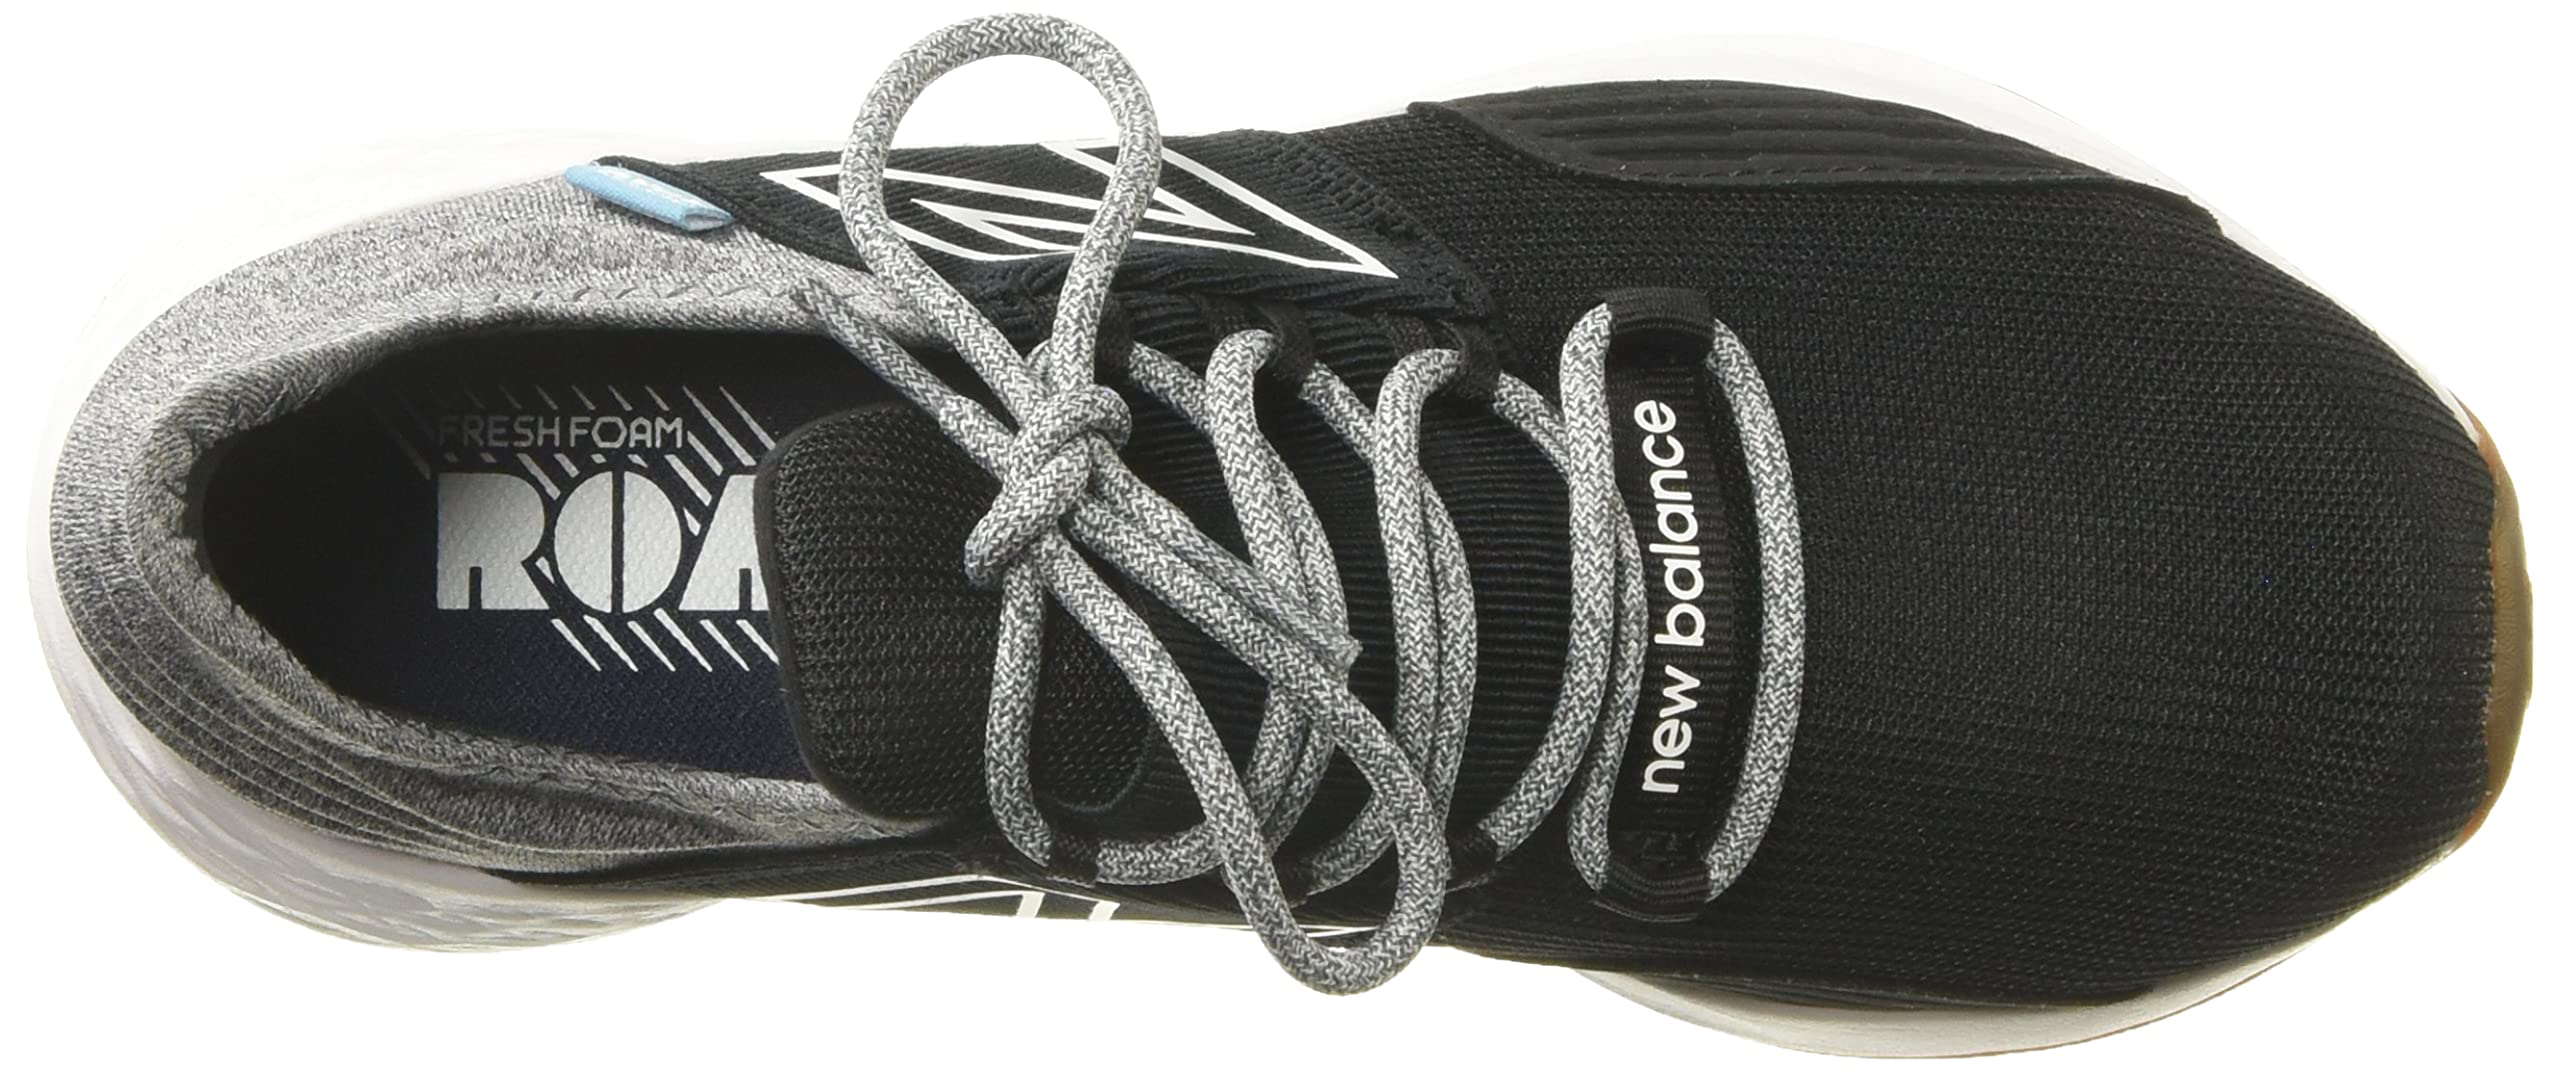 New Balance Unisex-Child Fresh Foam Roav V1 Lace-up Running Shoe